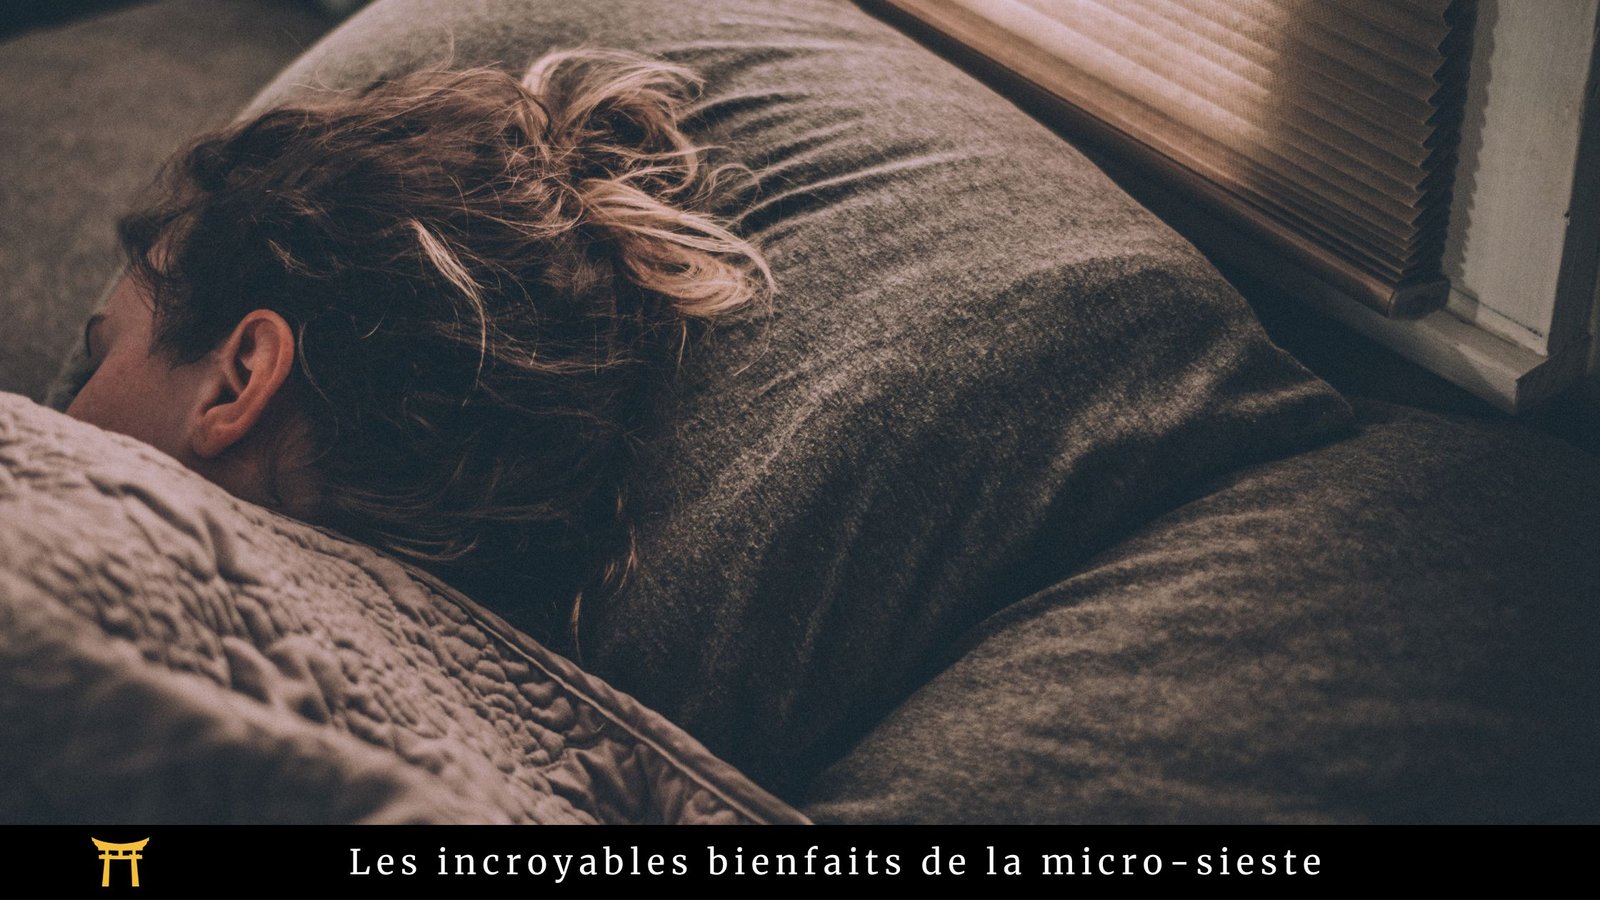 une femme qui fait la sieste, accompagné de la mention : "Les bienfaits incroyables de la micro-sieste"